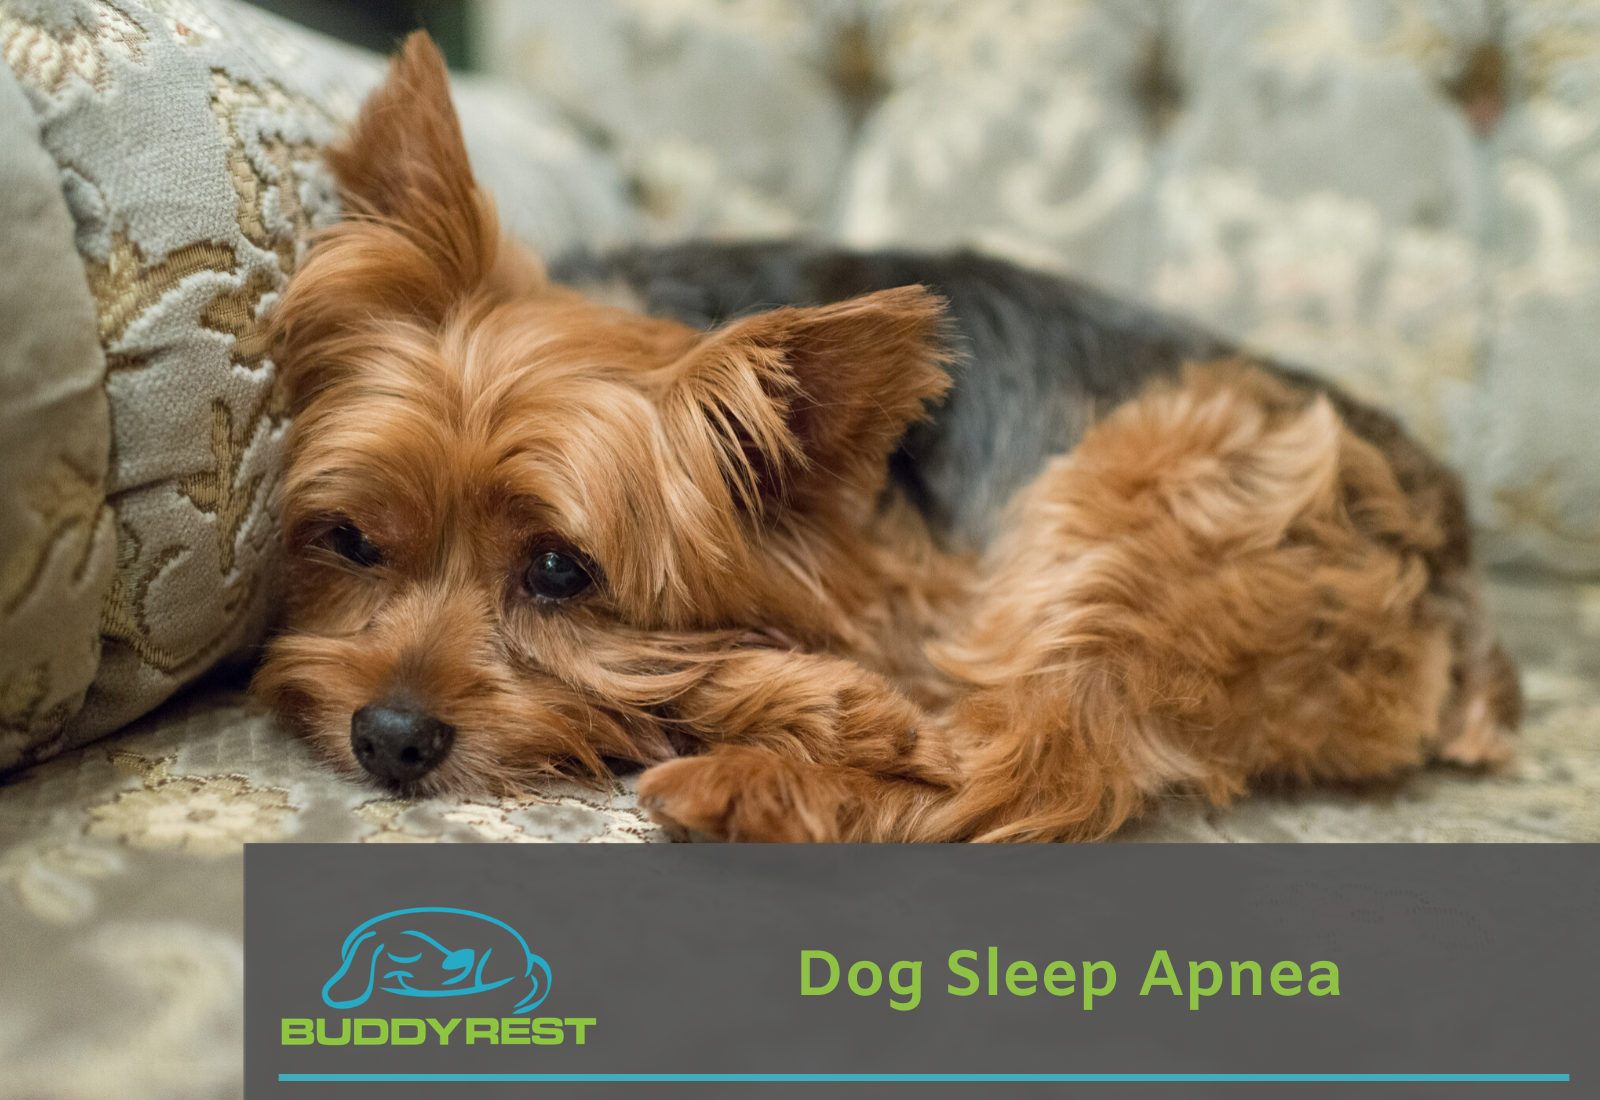 Dog Sleep Apnea